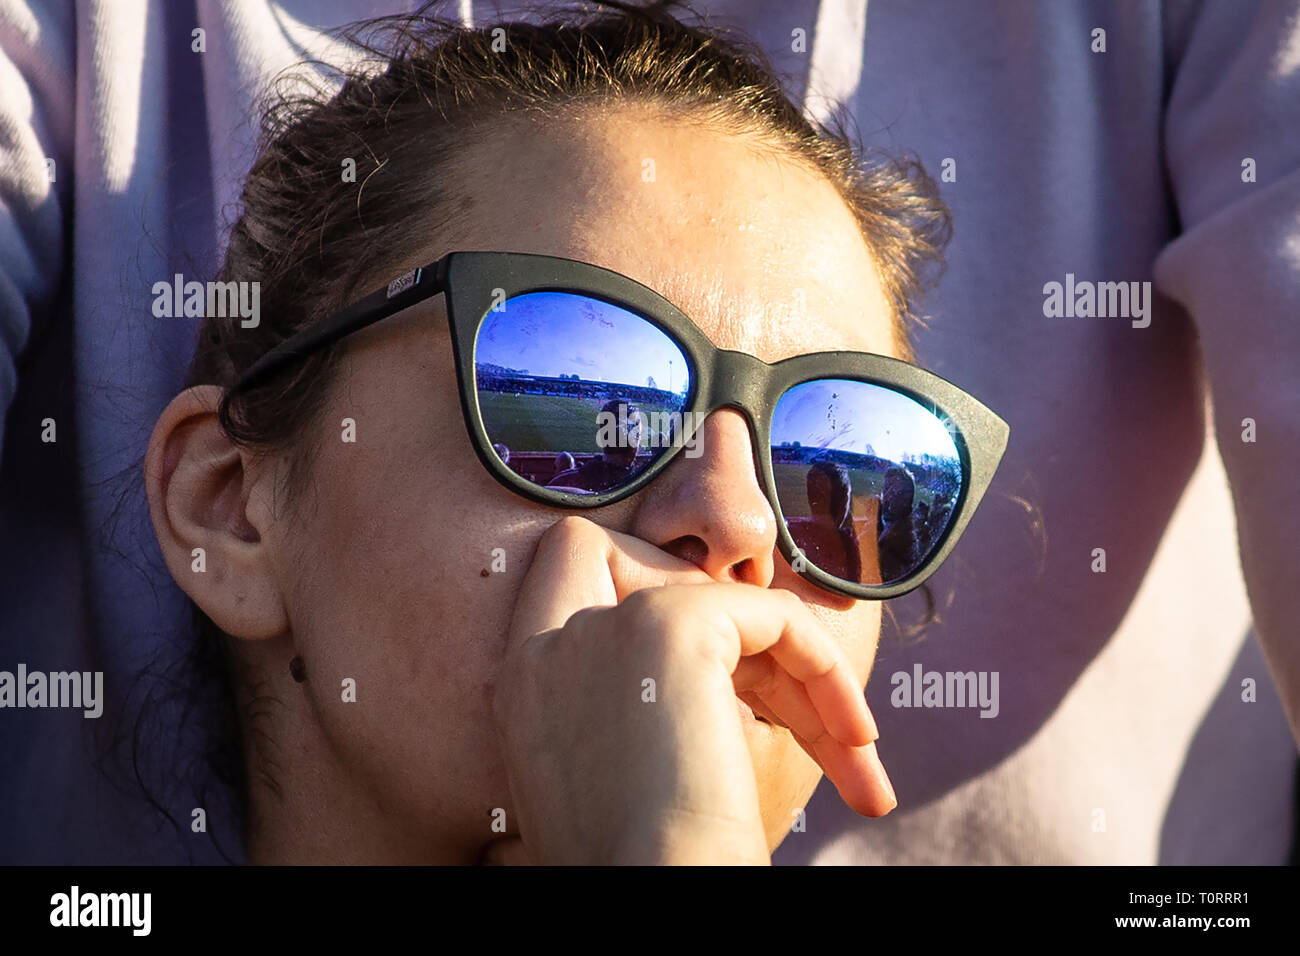 Weibliche Fußball-Ventilator Sonnenbrillen tragen, gerade aus, die auf der Terrasse und schaut nachdenklich. Stockfoto